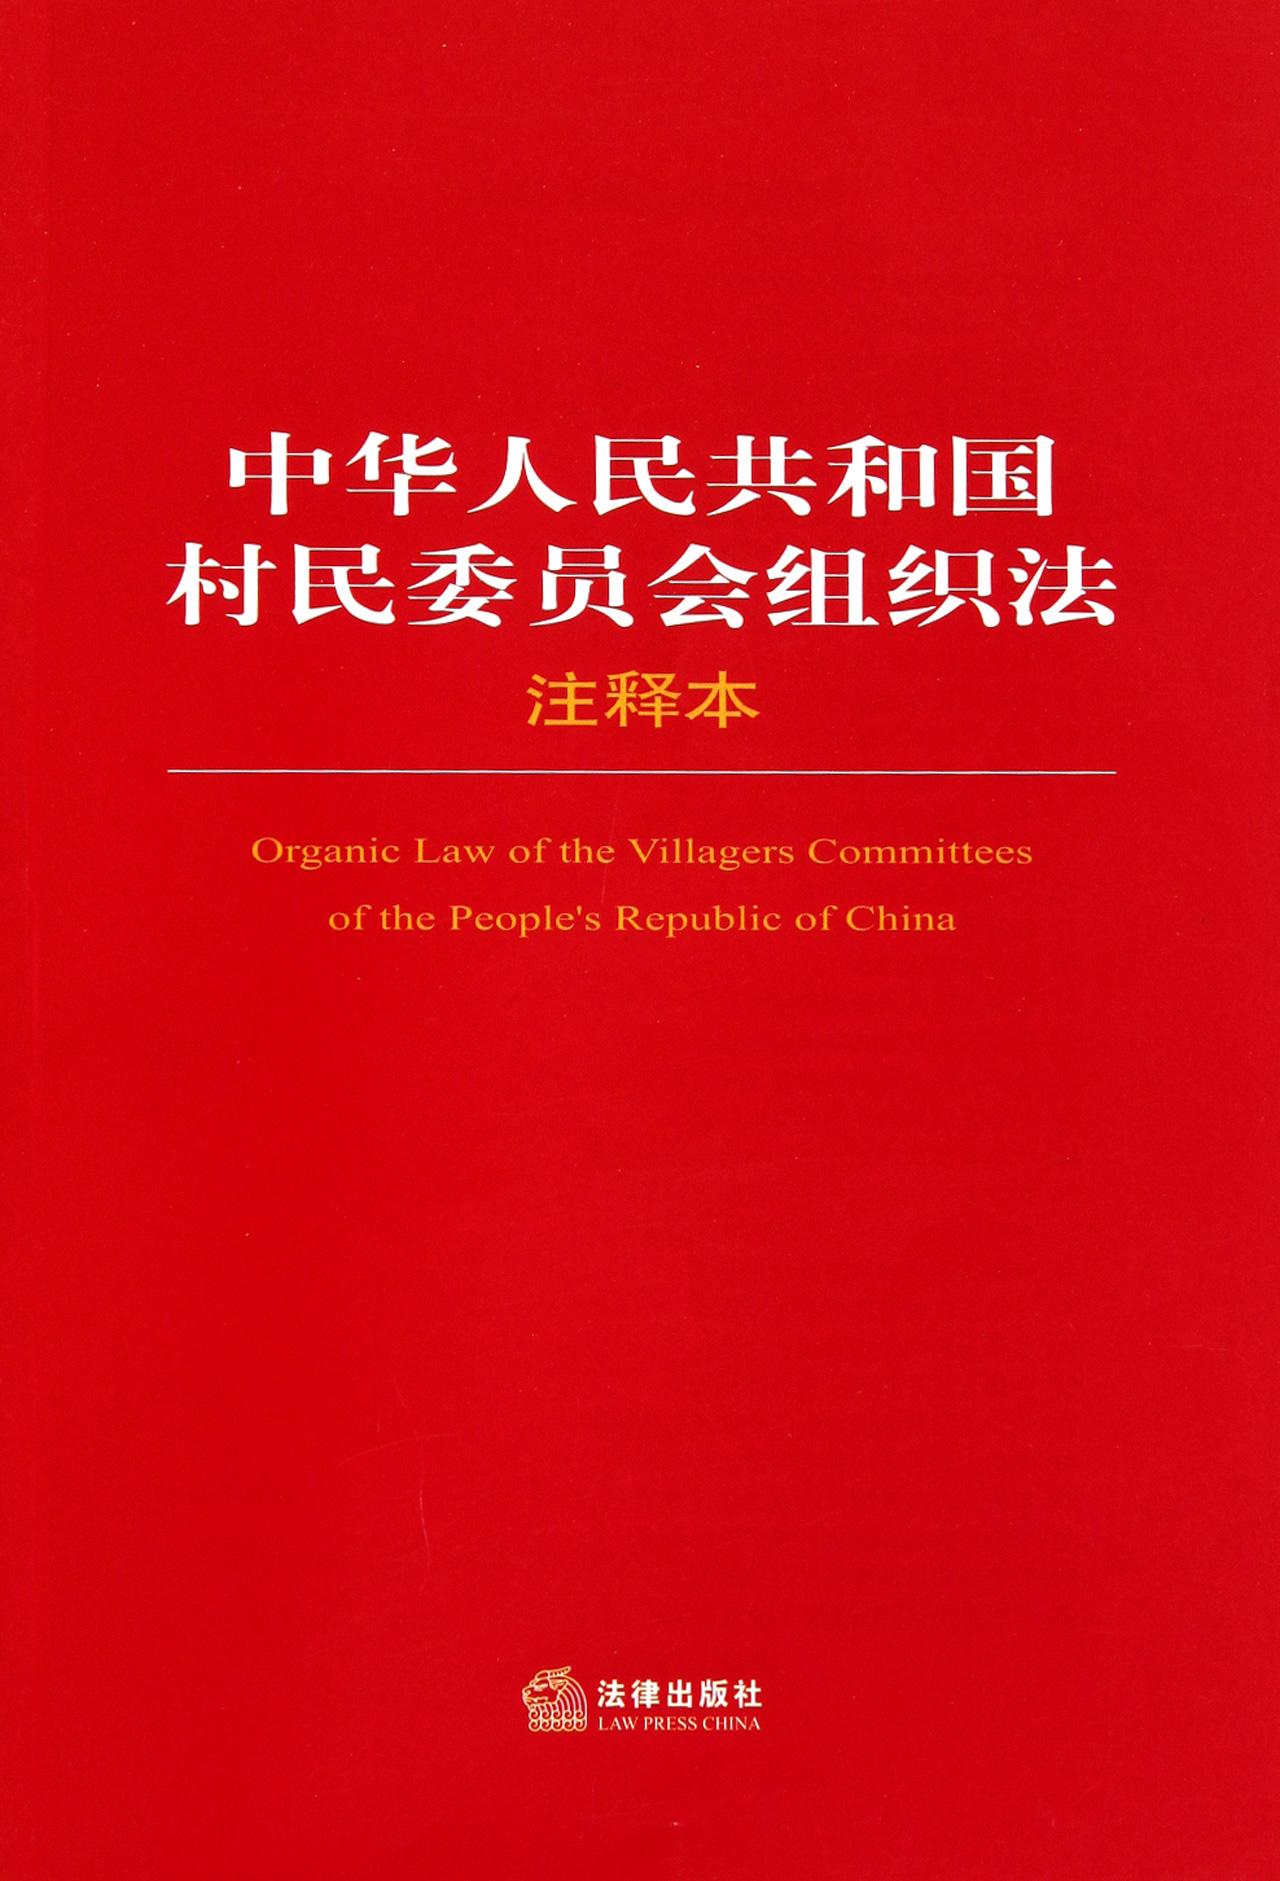 重慶市實施《中華人民共和國村民委員會組織法》辦法